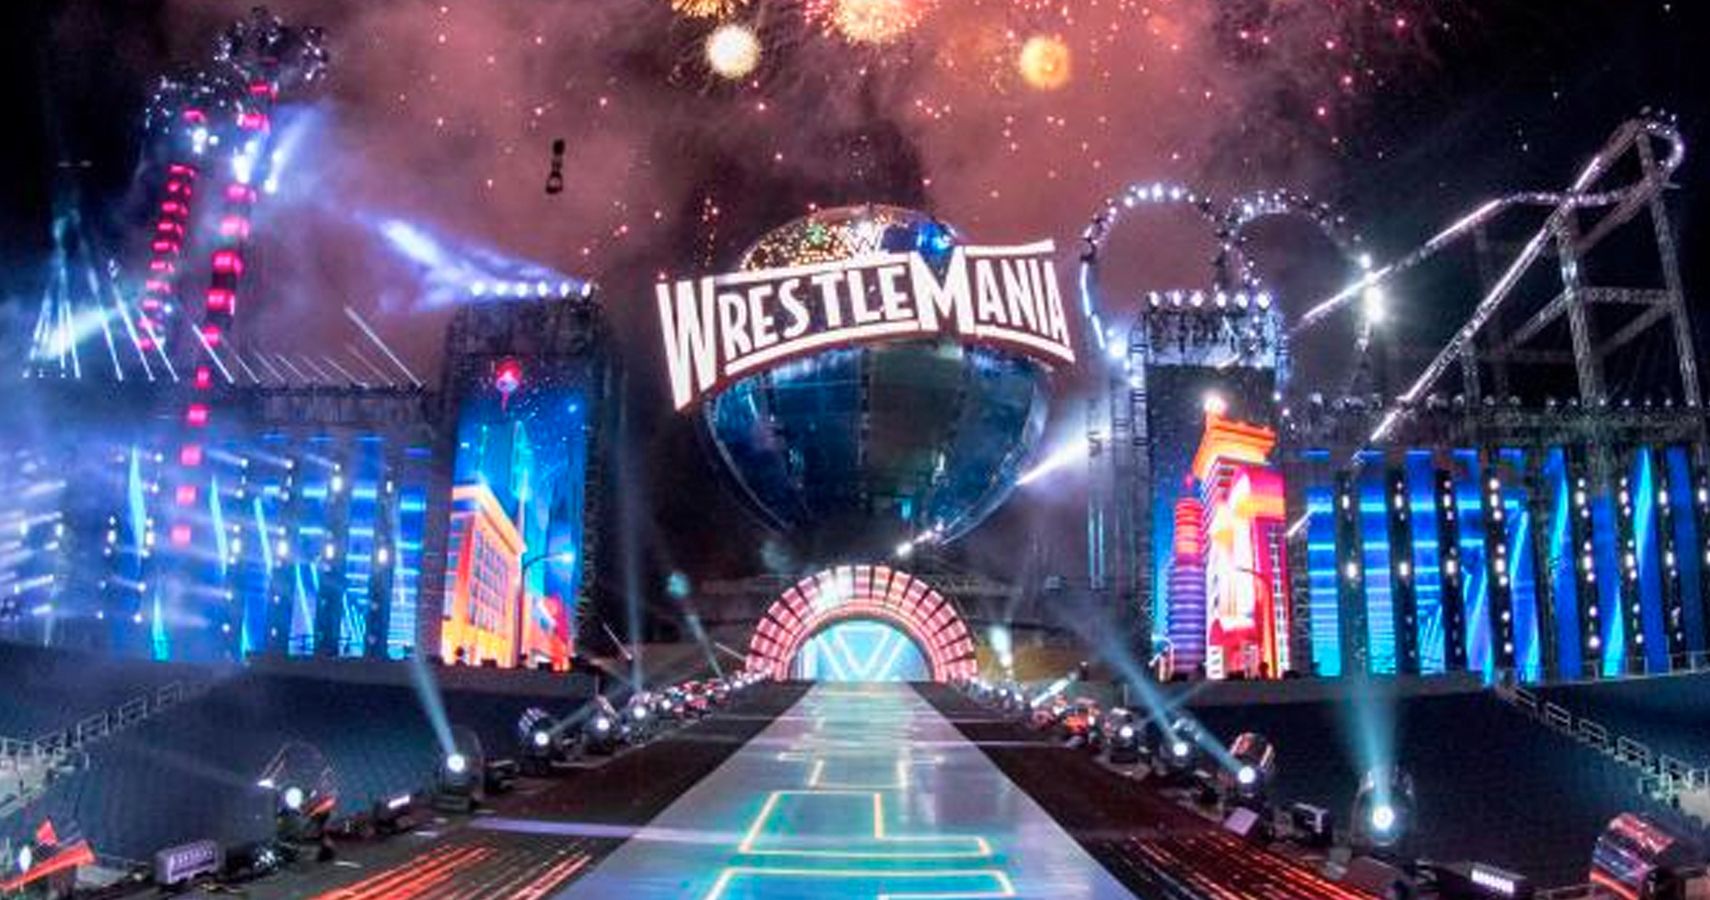 Detroit Is A Major FrontRunner For WrestleMania 2019